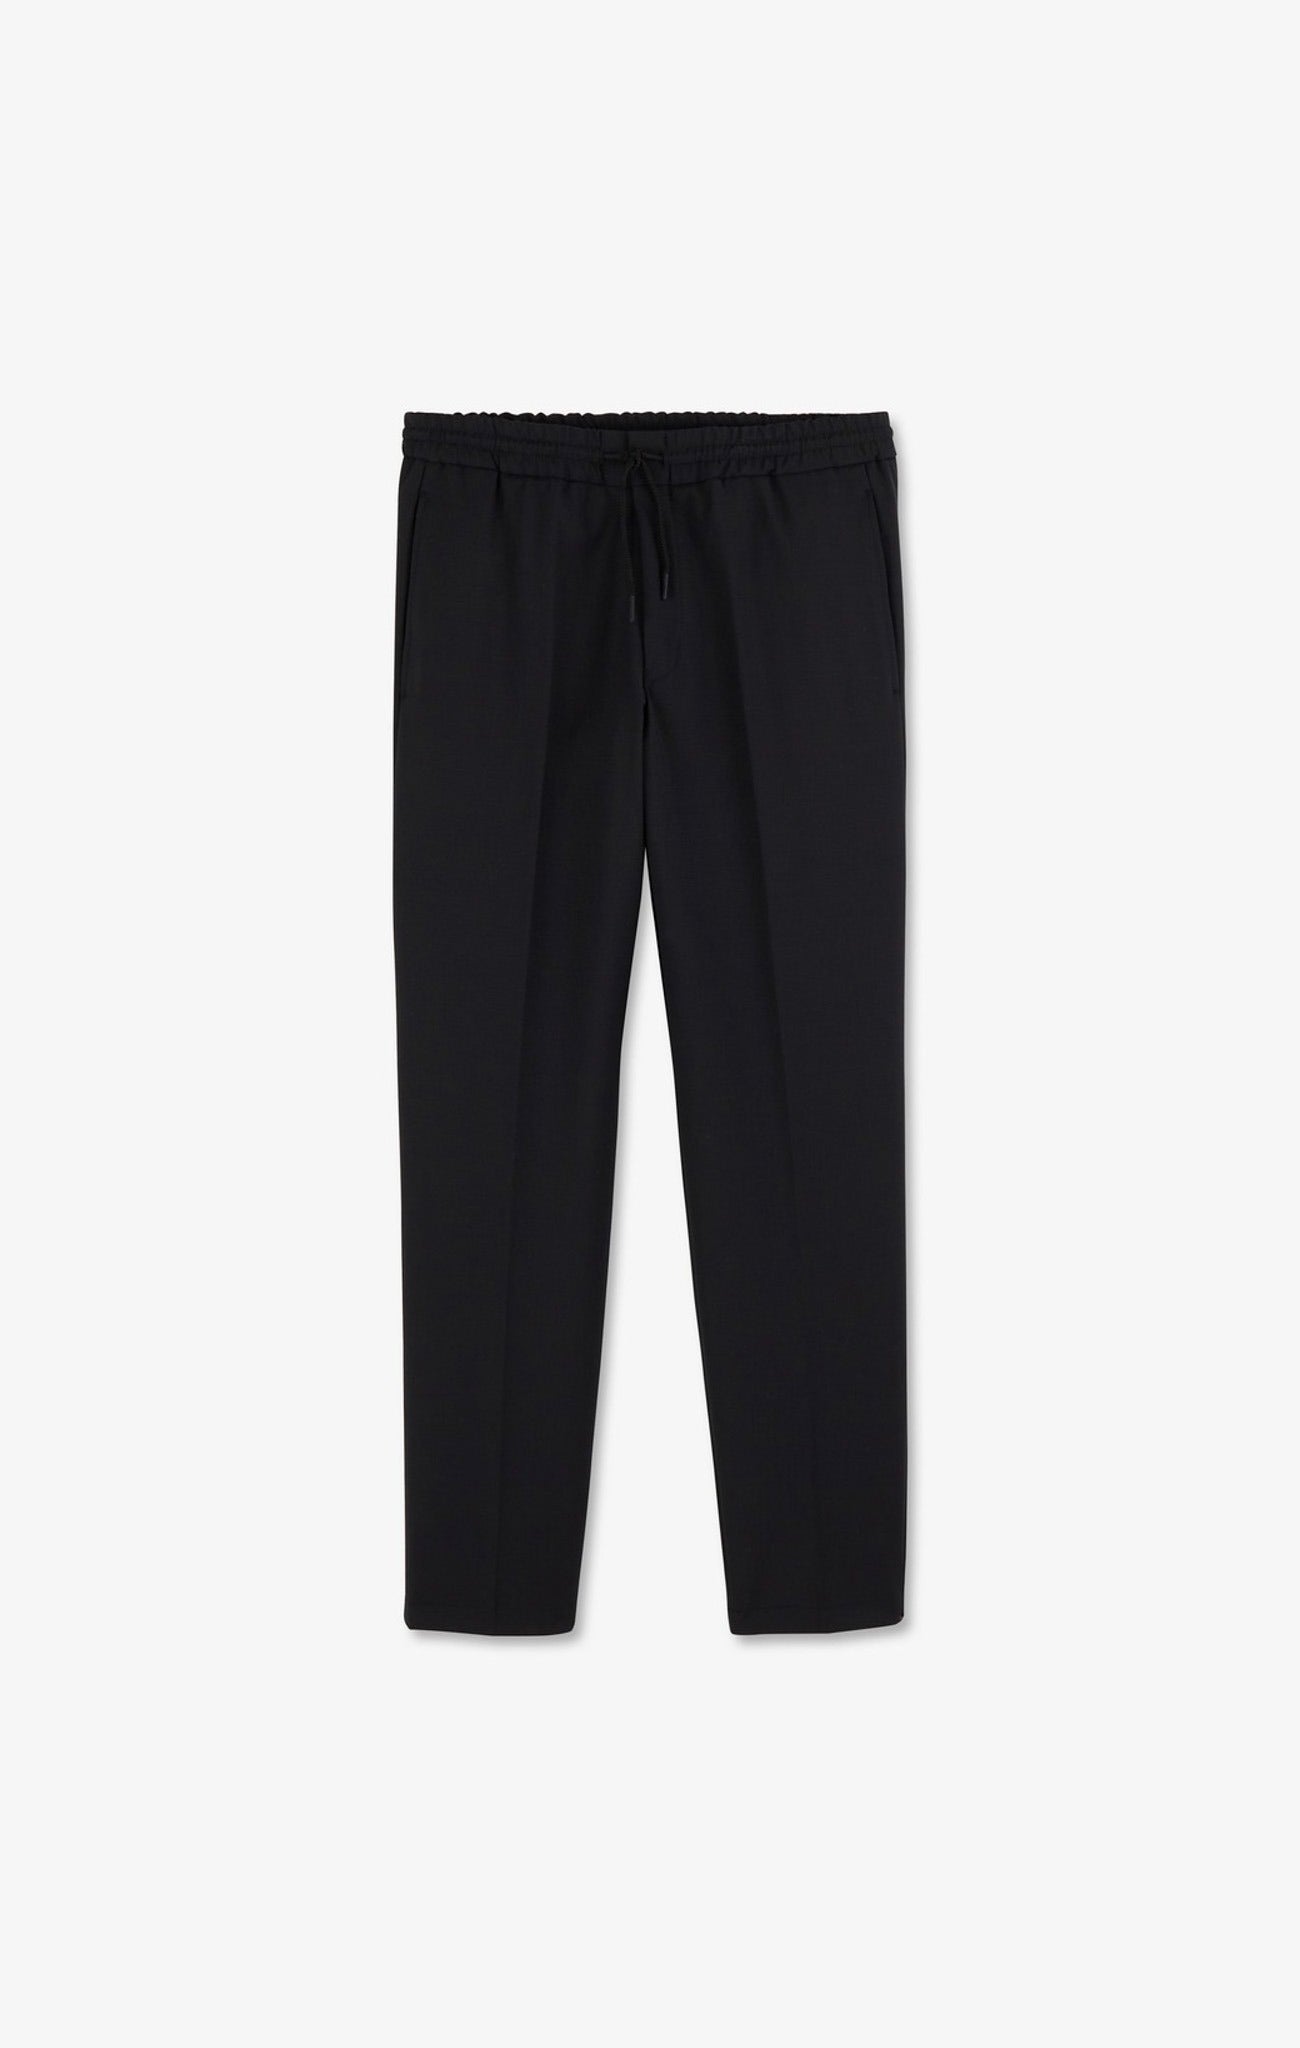 Pantalon taille élastiquée noir - Image 2